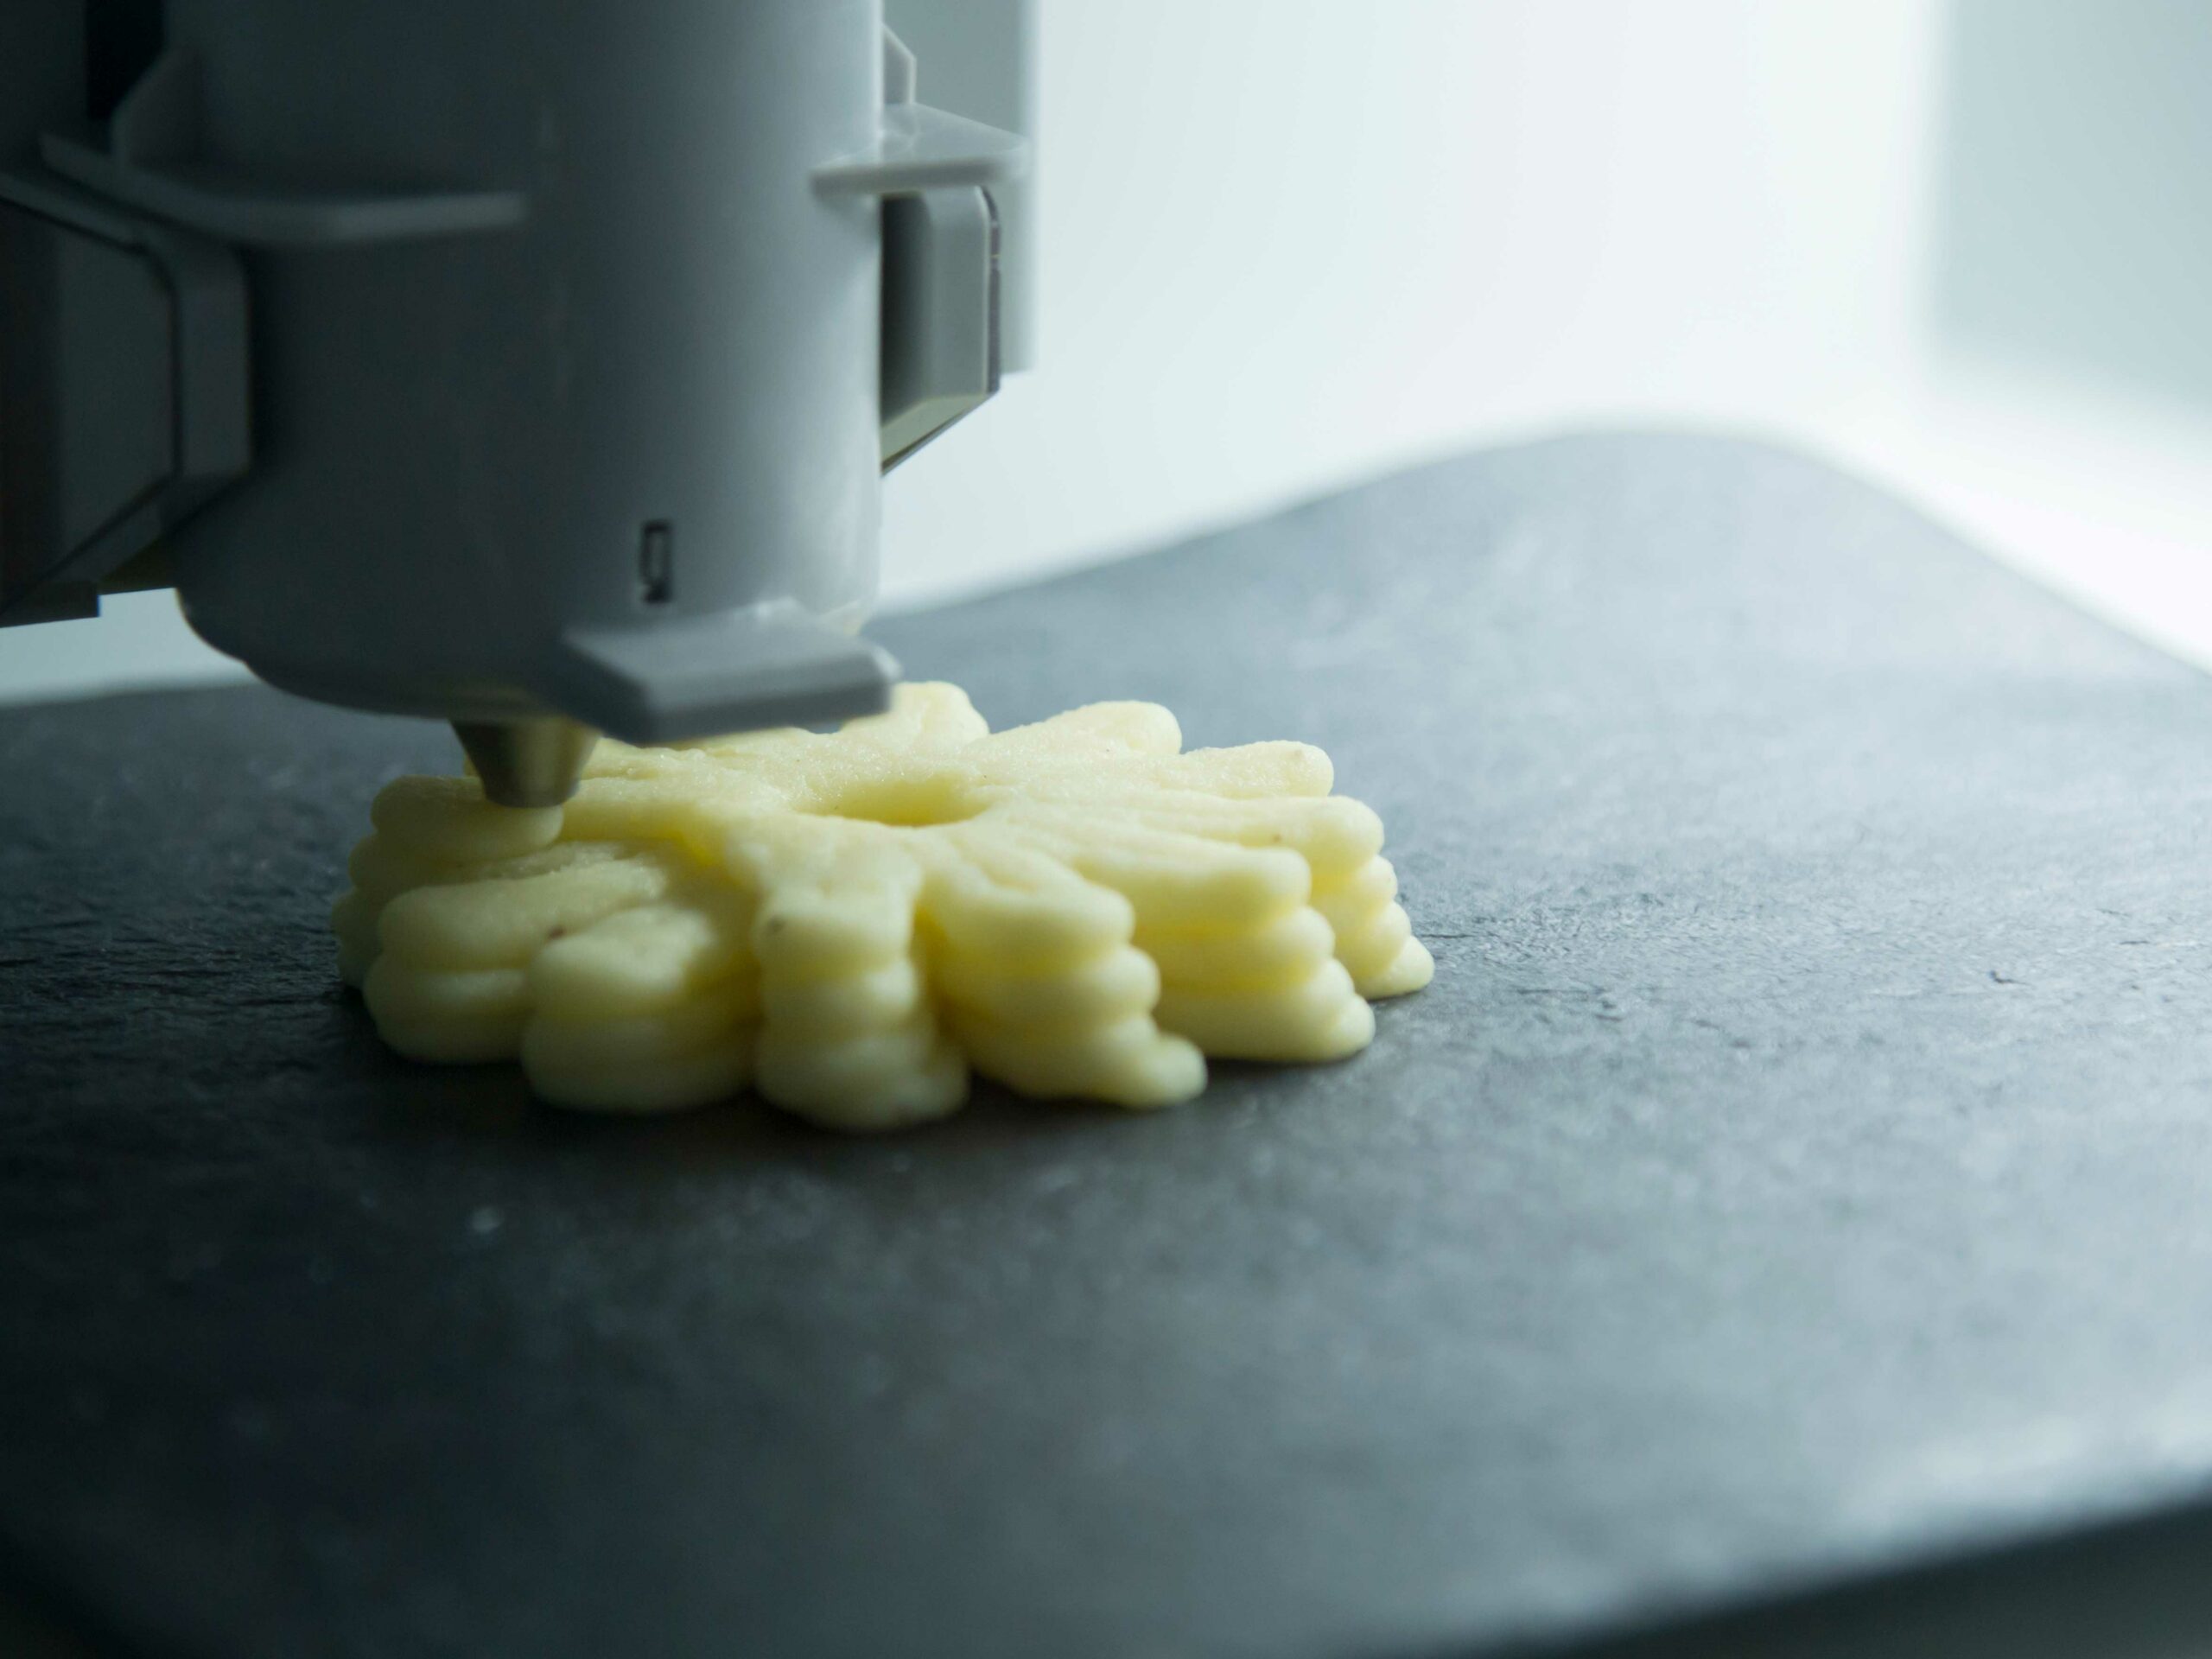 Stampa in 3D: le stampanti e i prodotti da avere in casa